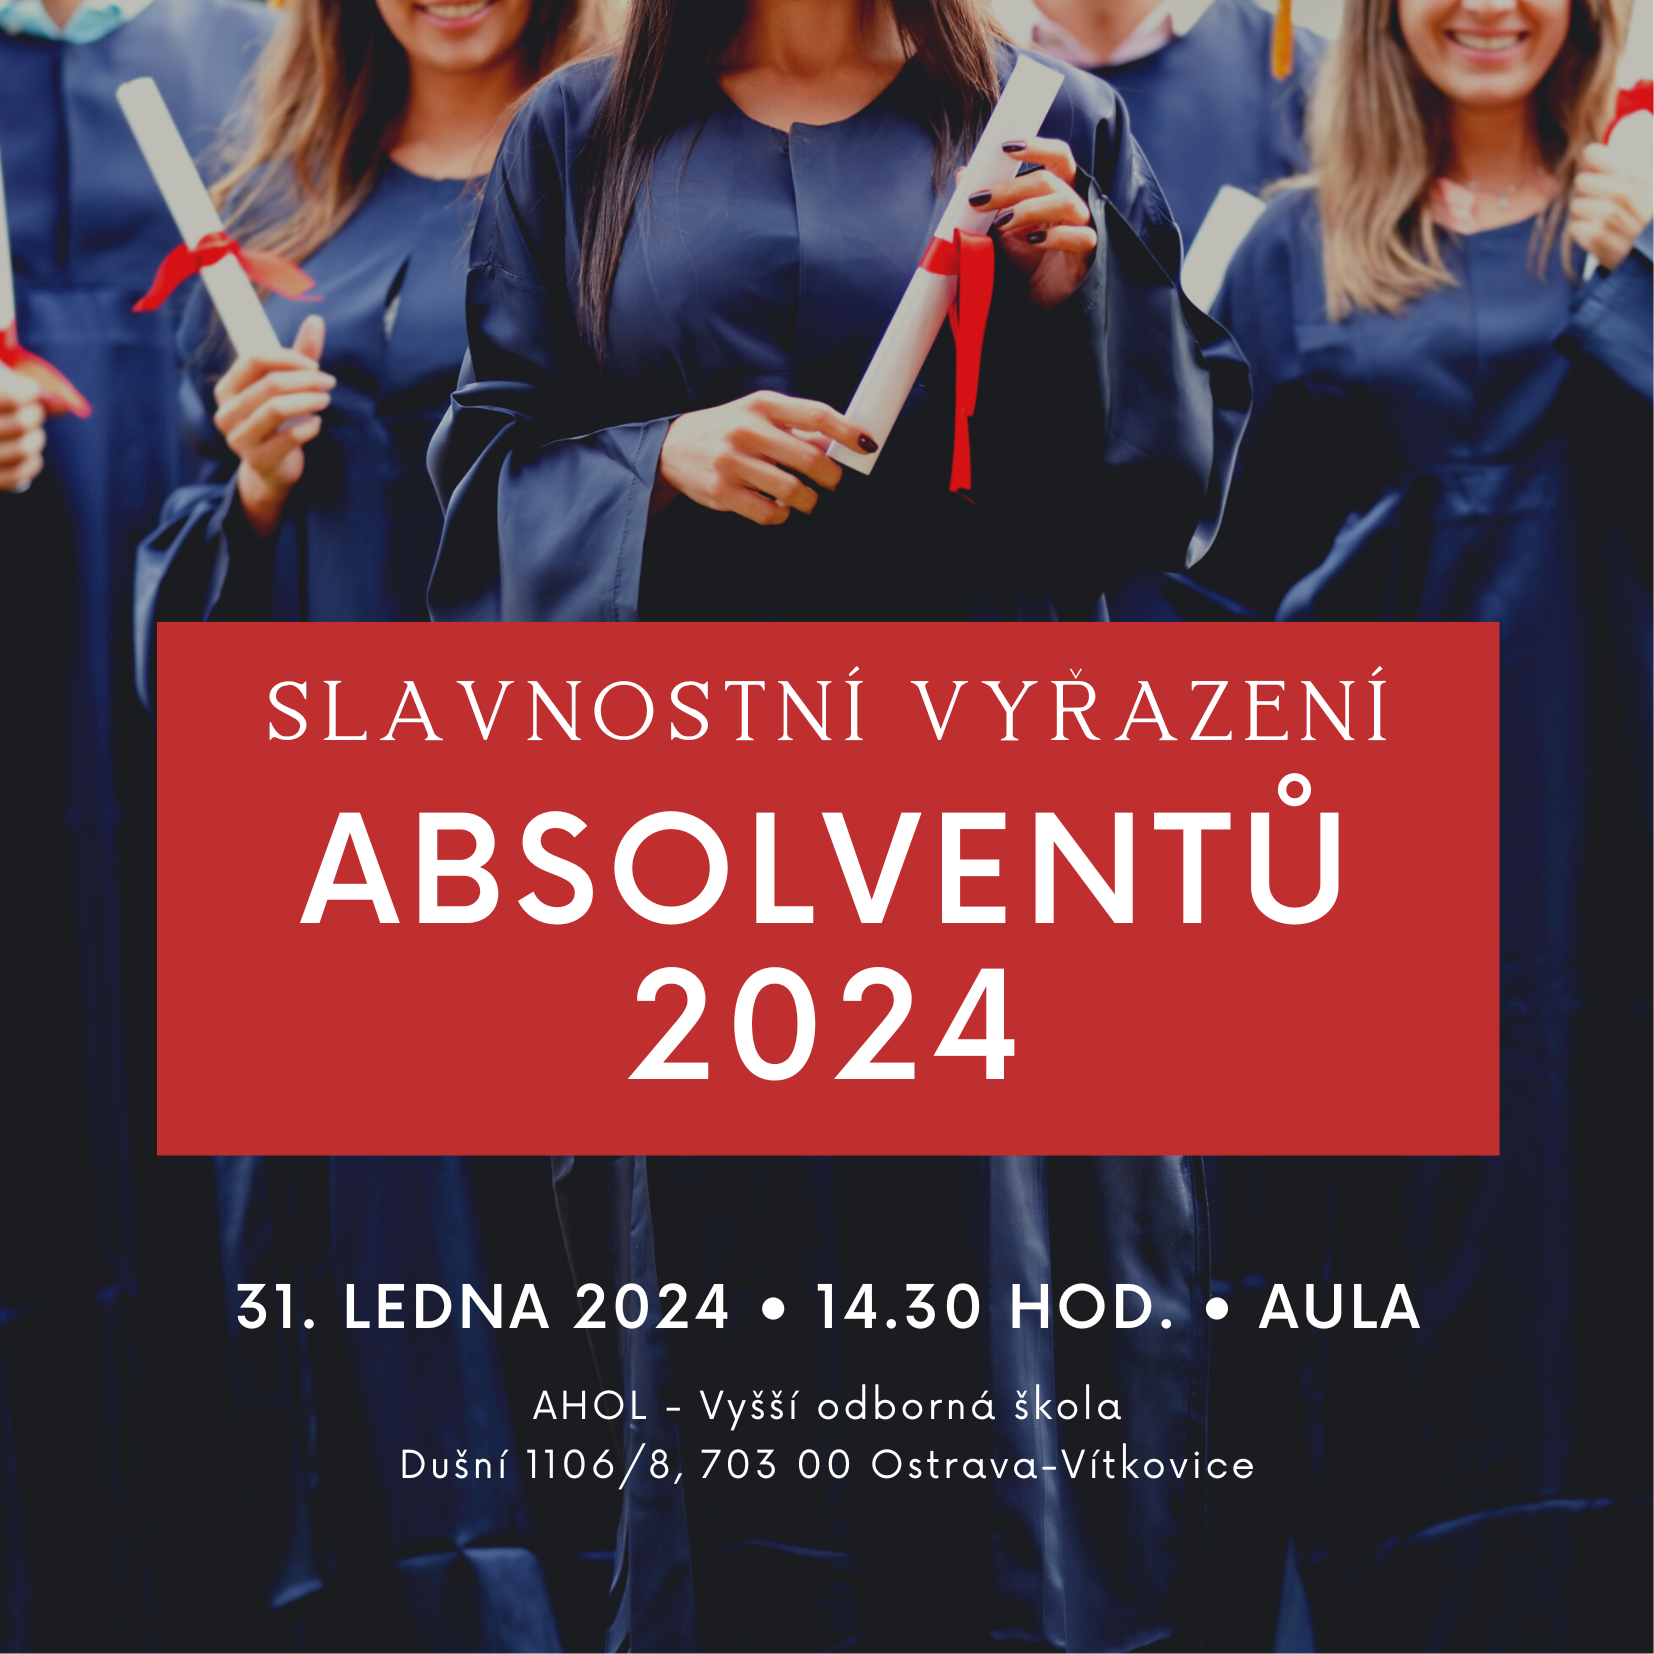 Featured image for “Slavnostní vyřazení absolventů dálkové formy”